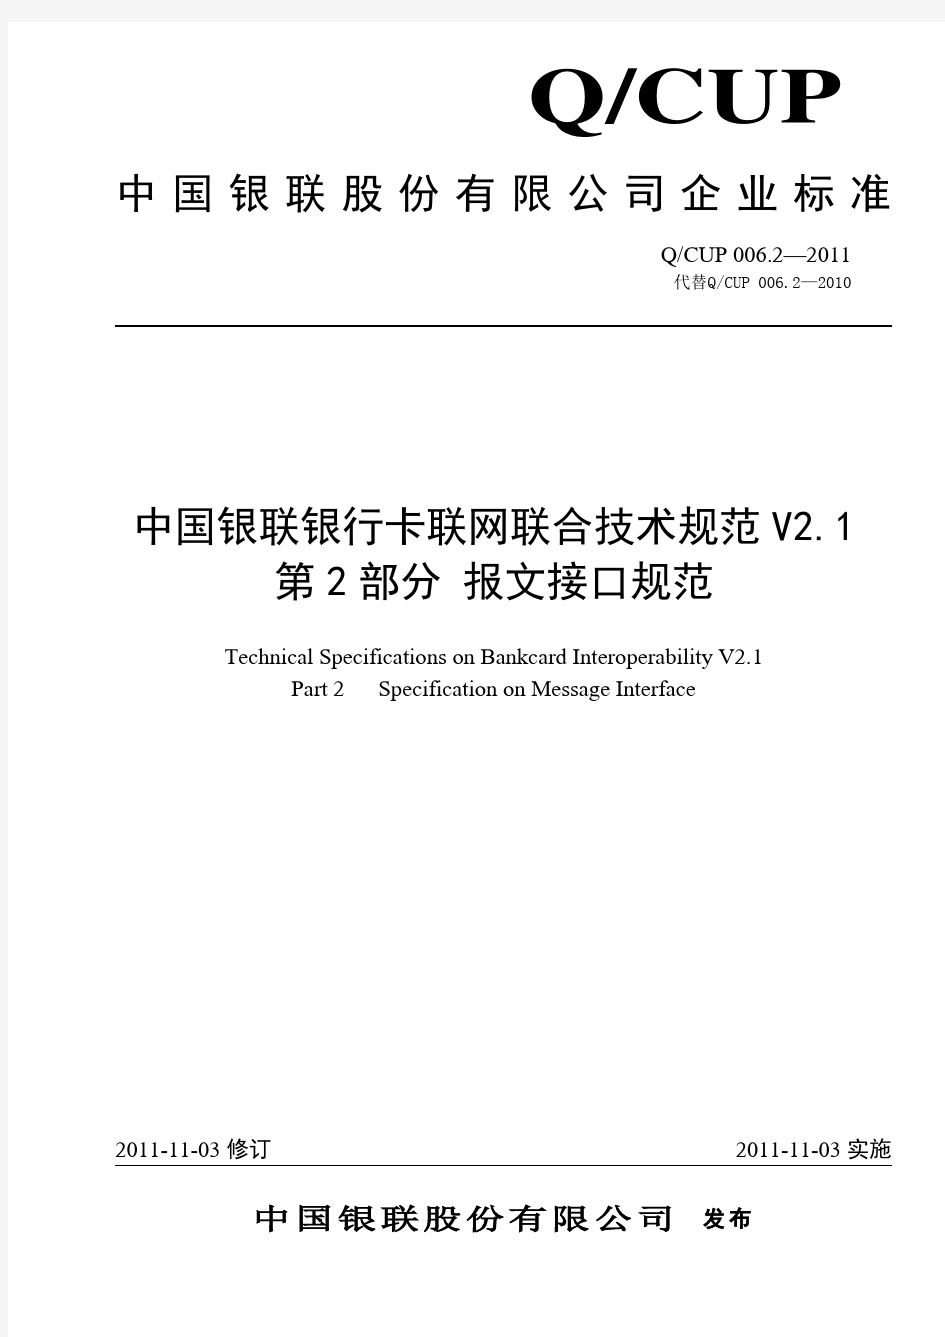 中国银联银行卡联网联合技术规范V2.1 第2部分 报文接口规范